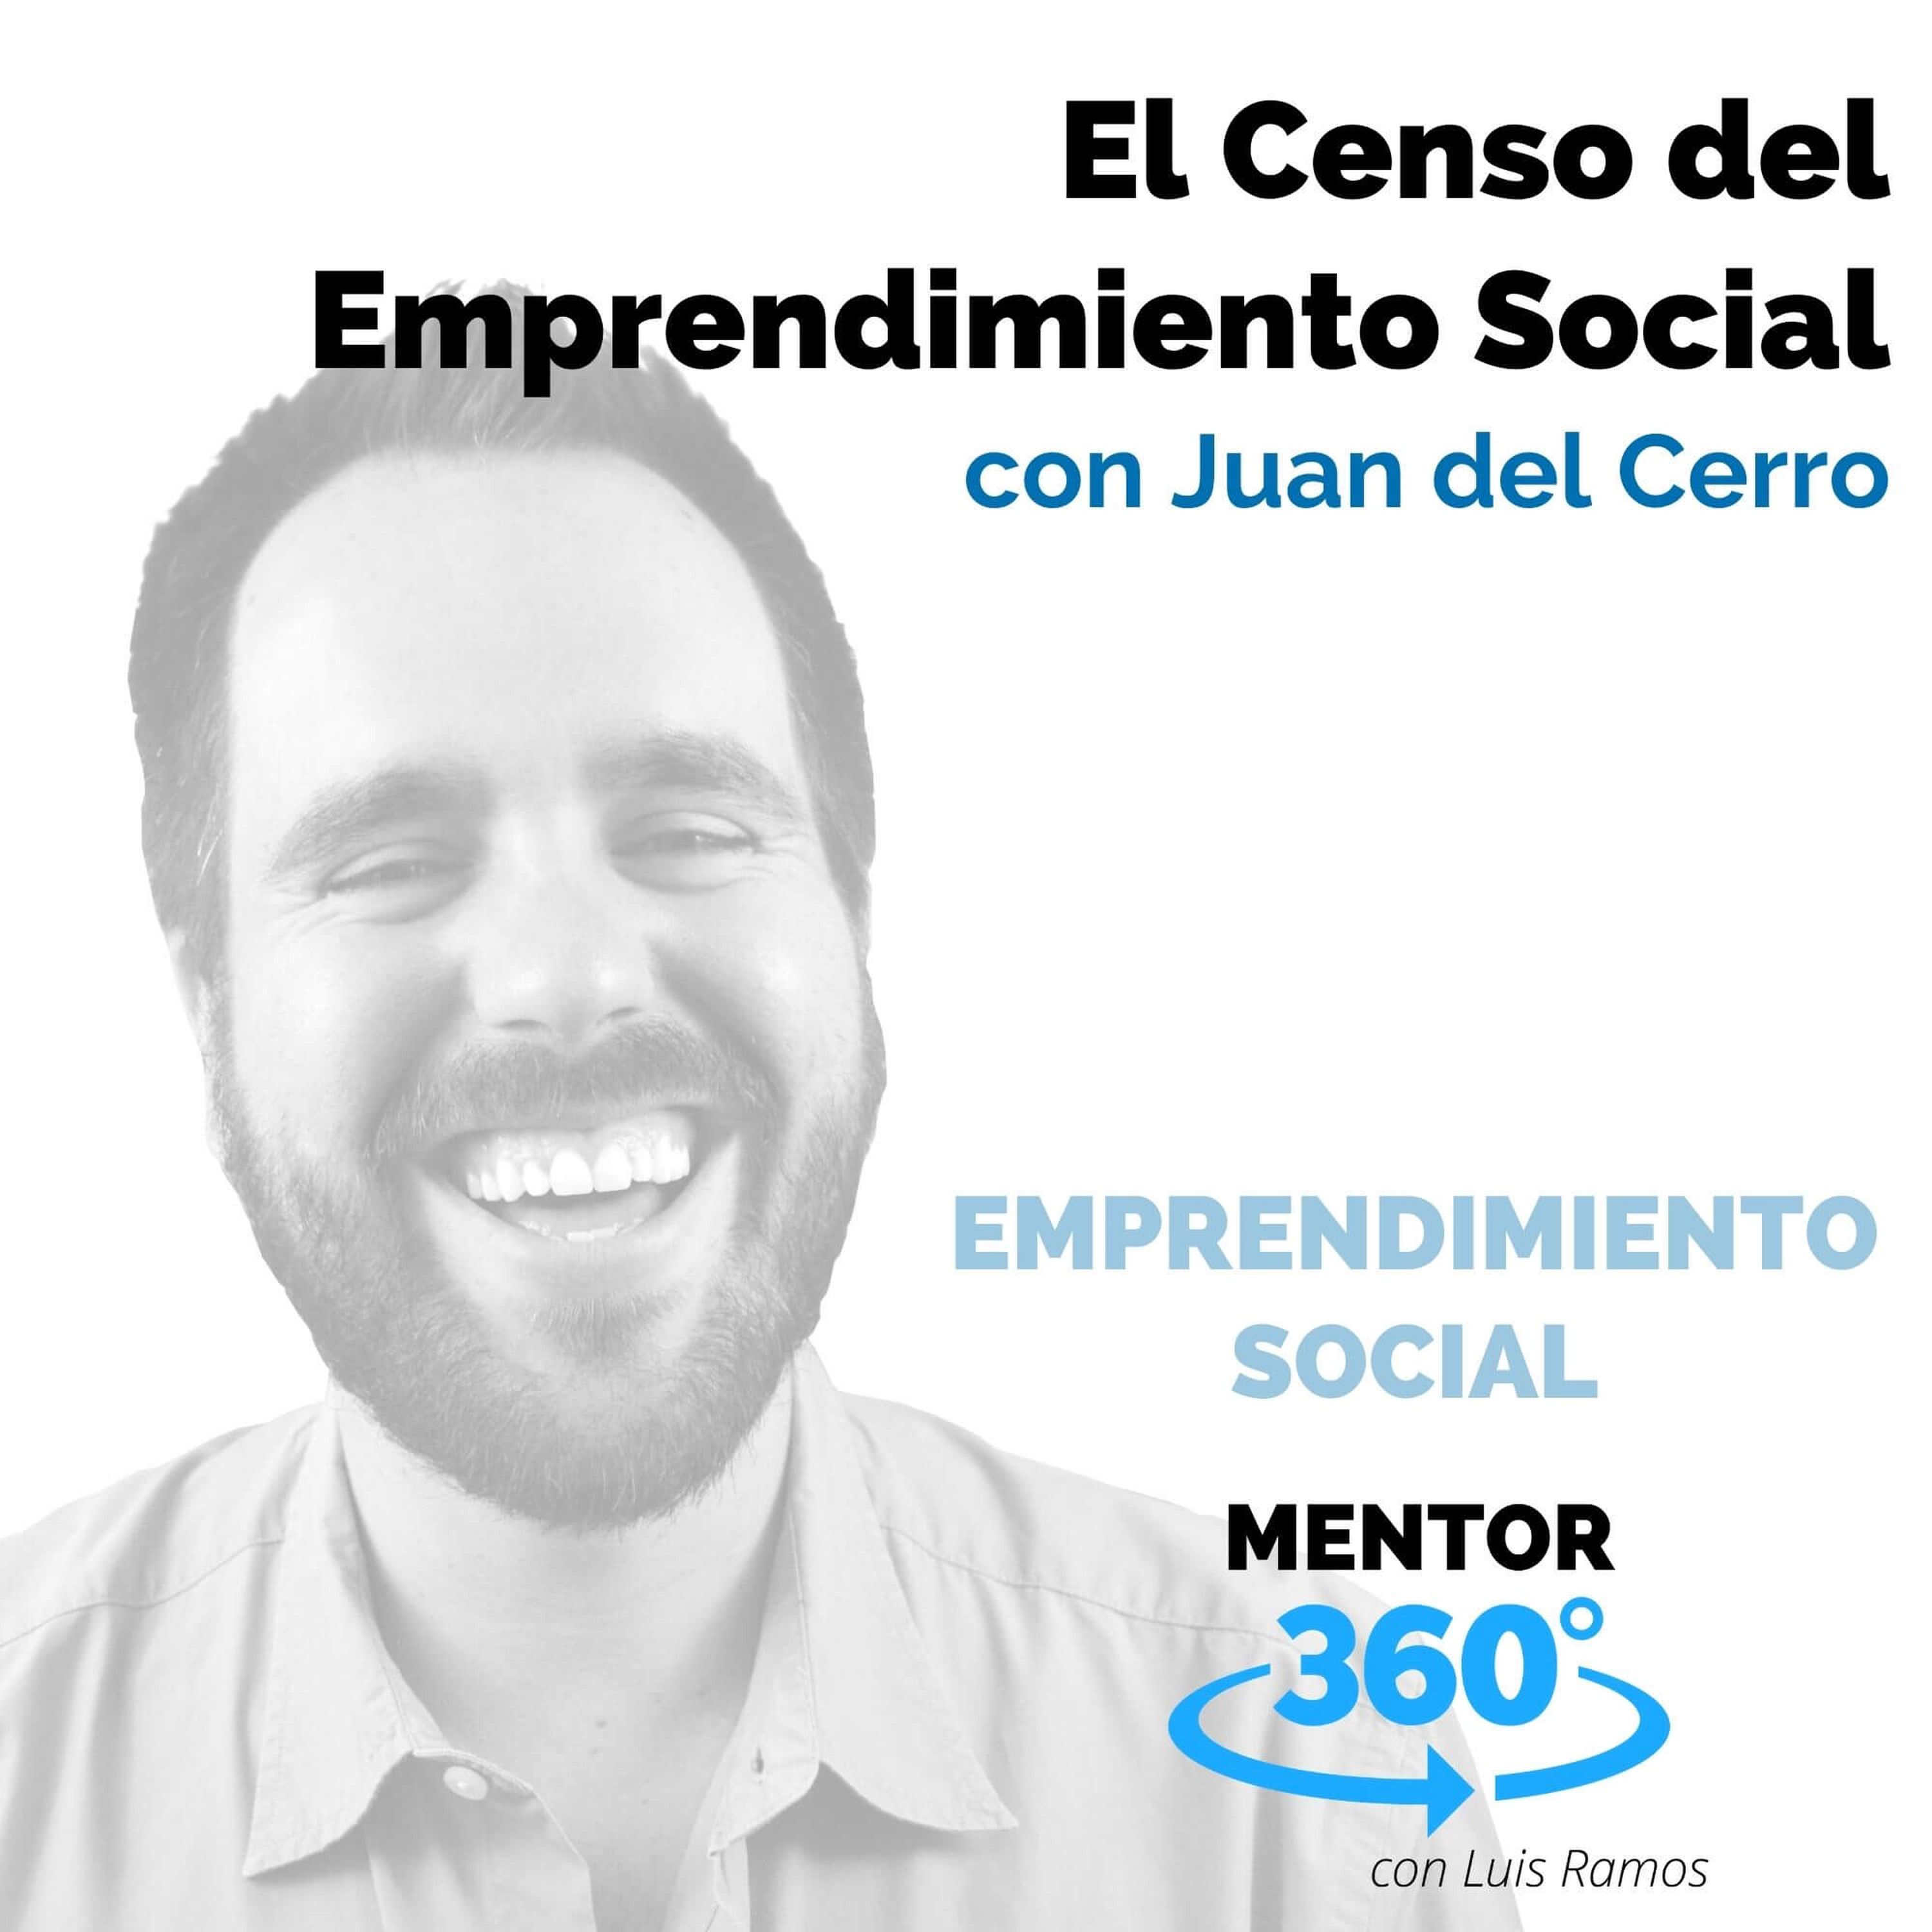 El Censo del Emprendimiento Social, con Juan del Cerro - MENTOR360